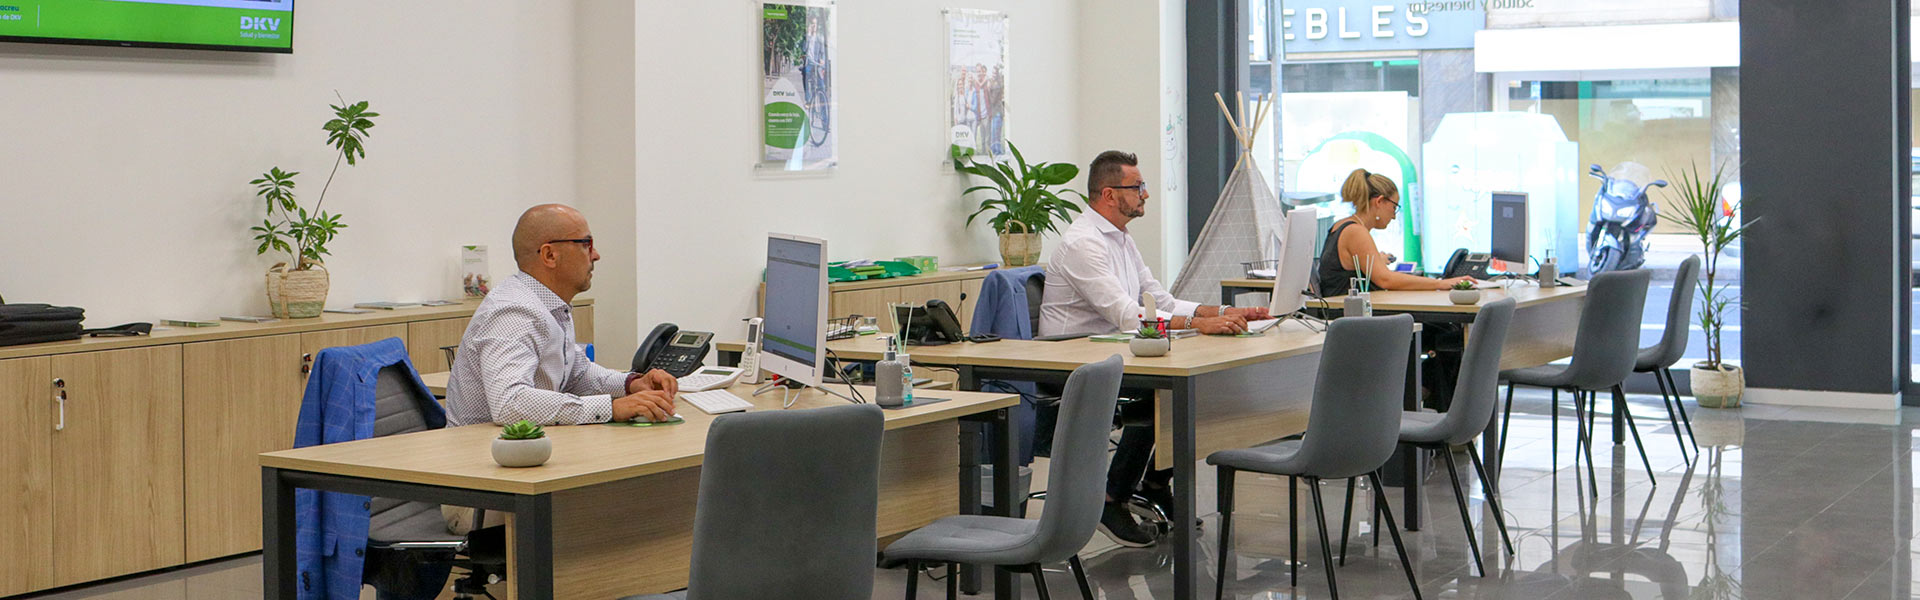 El equipo DKV trabajando en las nuevas oficinas de Elche